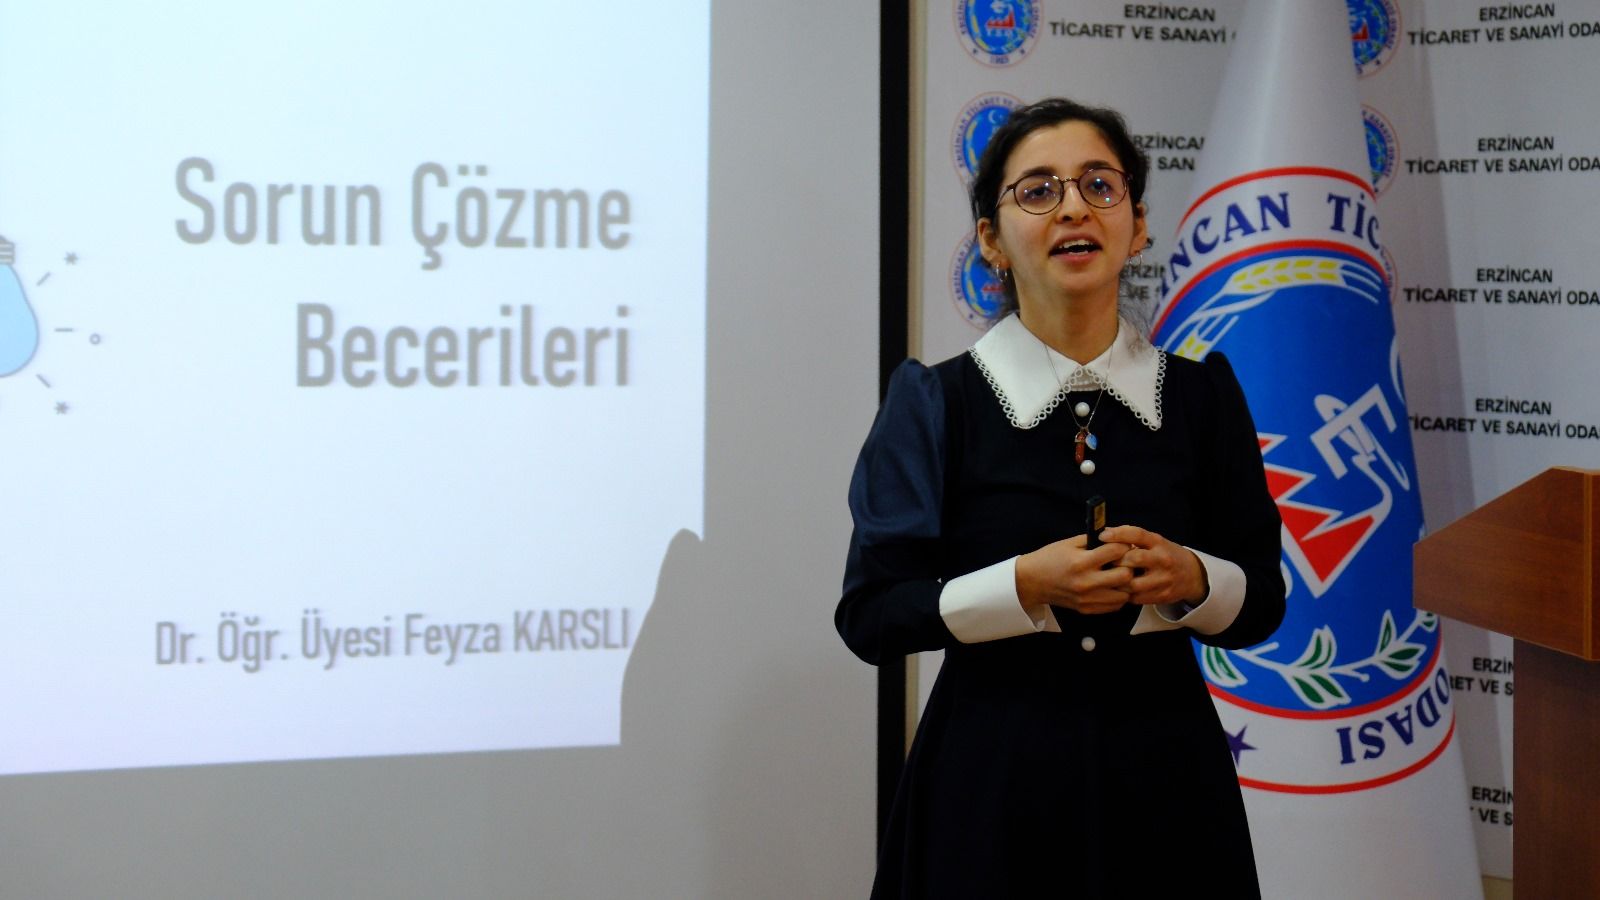 Erzincan’da Kadın Girişimcilere Sorun Çözme Becerisi Eğitimi Verildi